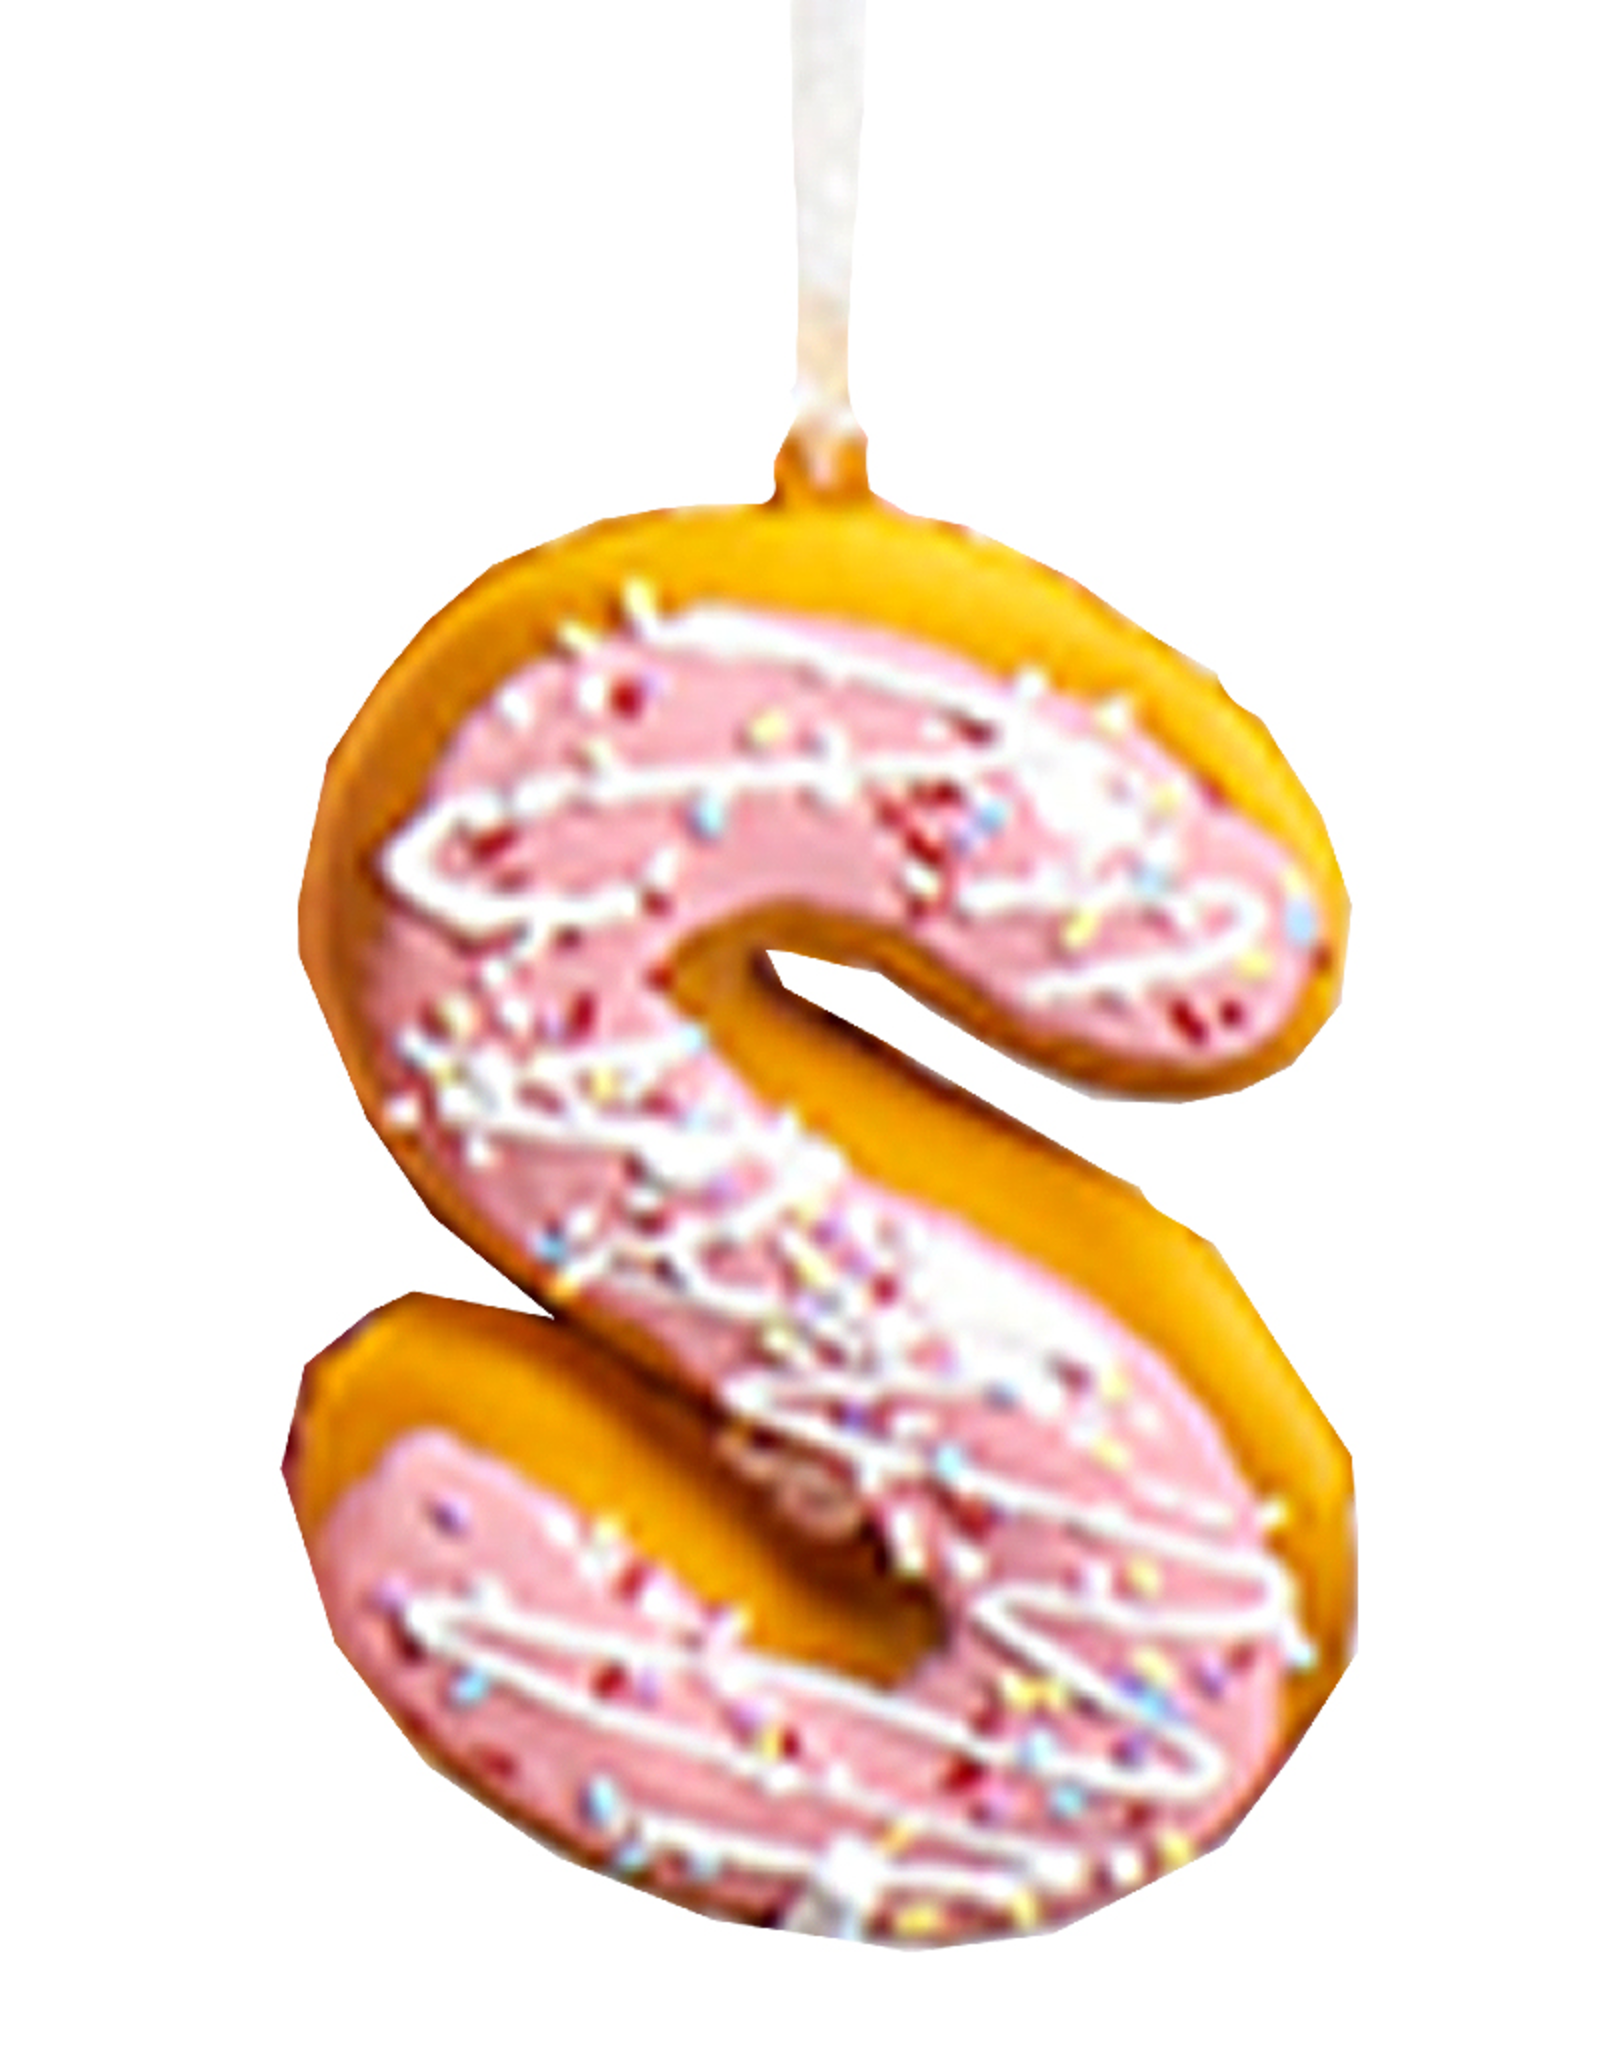 Kurt Adler Squeezable Donut Letter Ornament Initial S